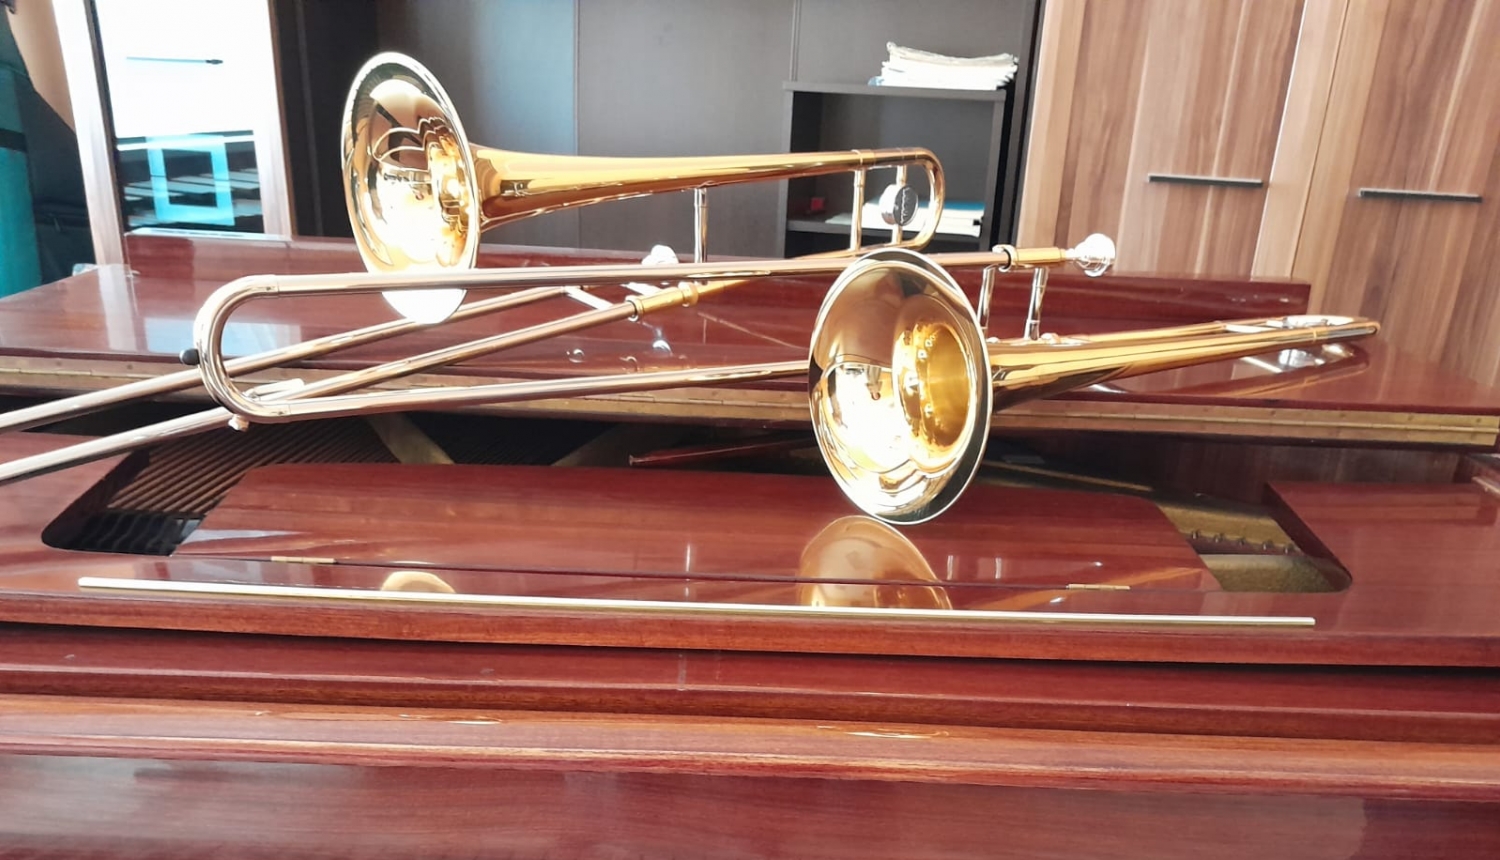 J.Cimzes Valkas Mūzikas skola iegādājusies divus “Yamaha” firmas pūšaminstrumentus – trombonus